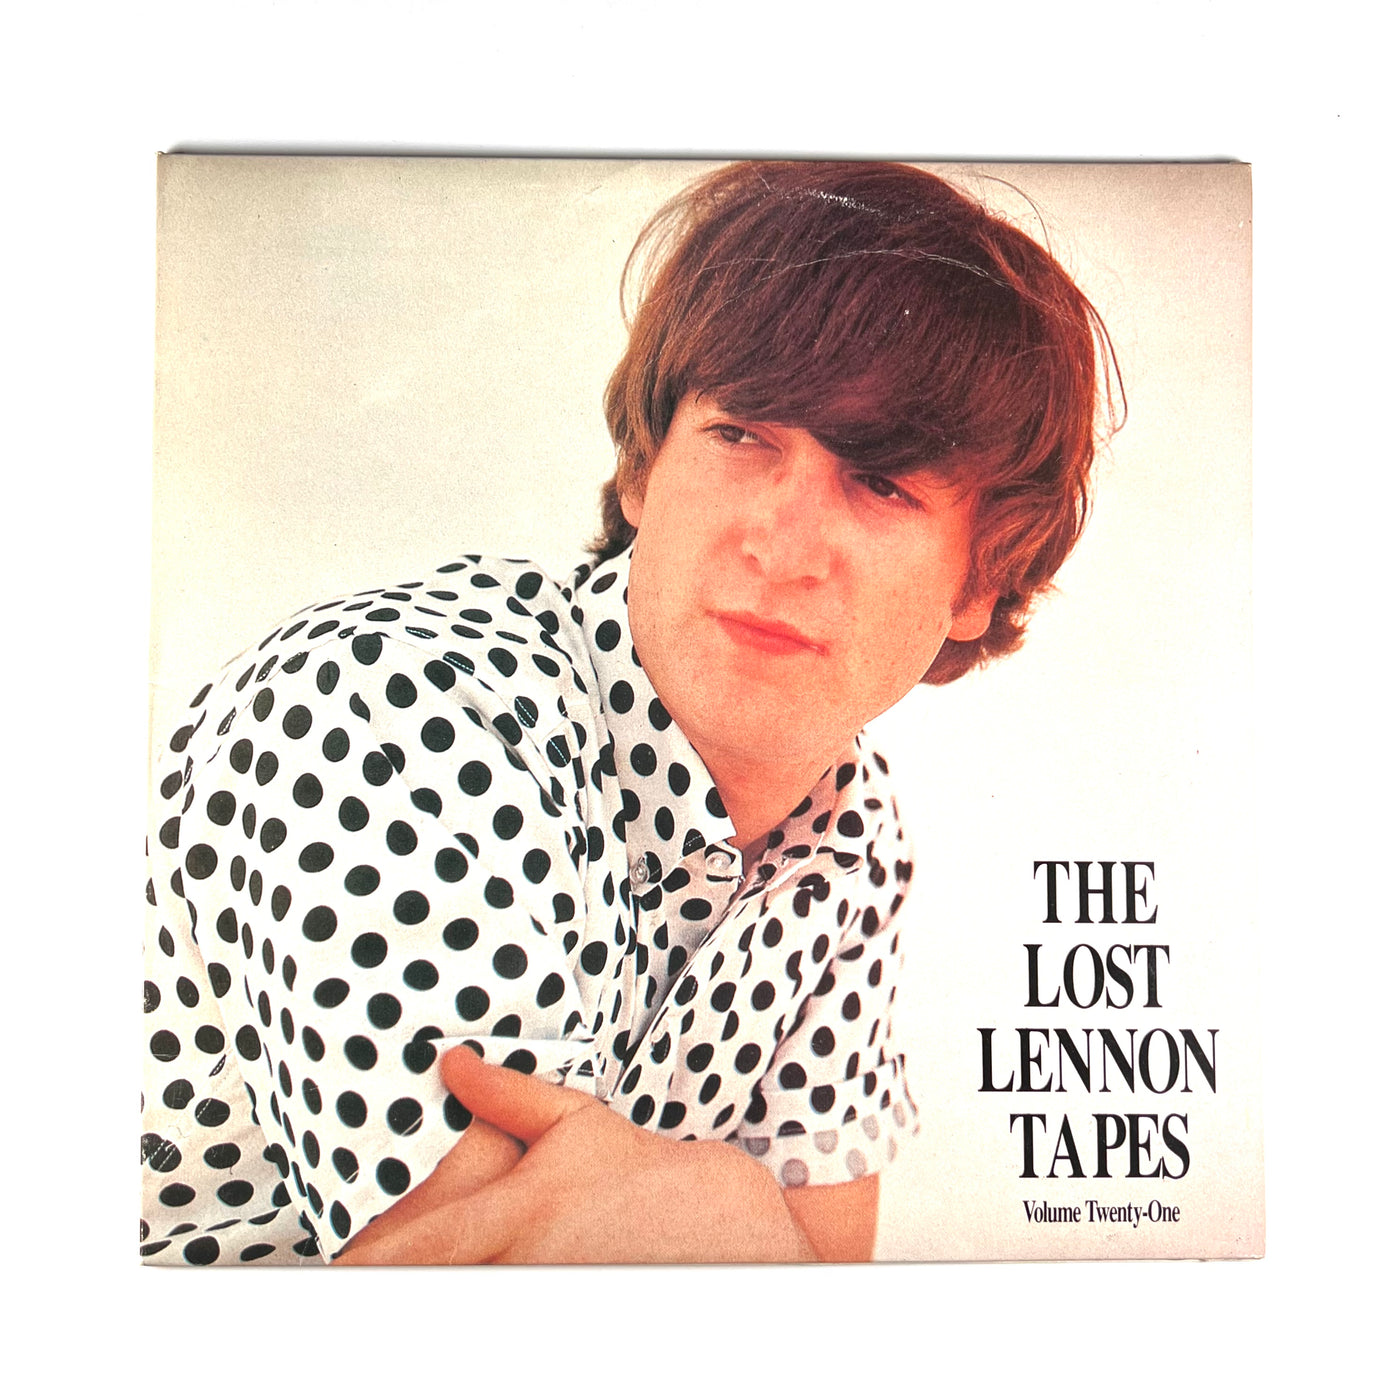 John Lennon - The Lost Lennon Tapes Volume Twenty-One